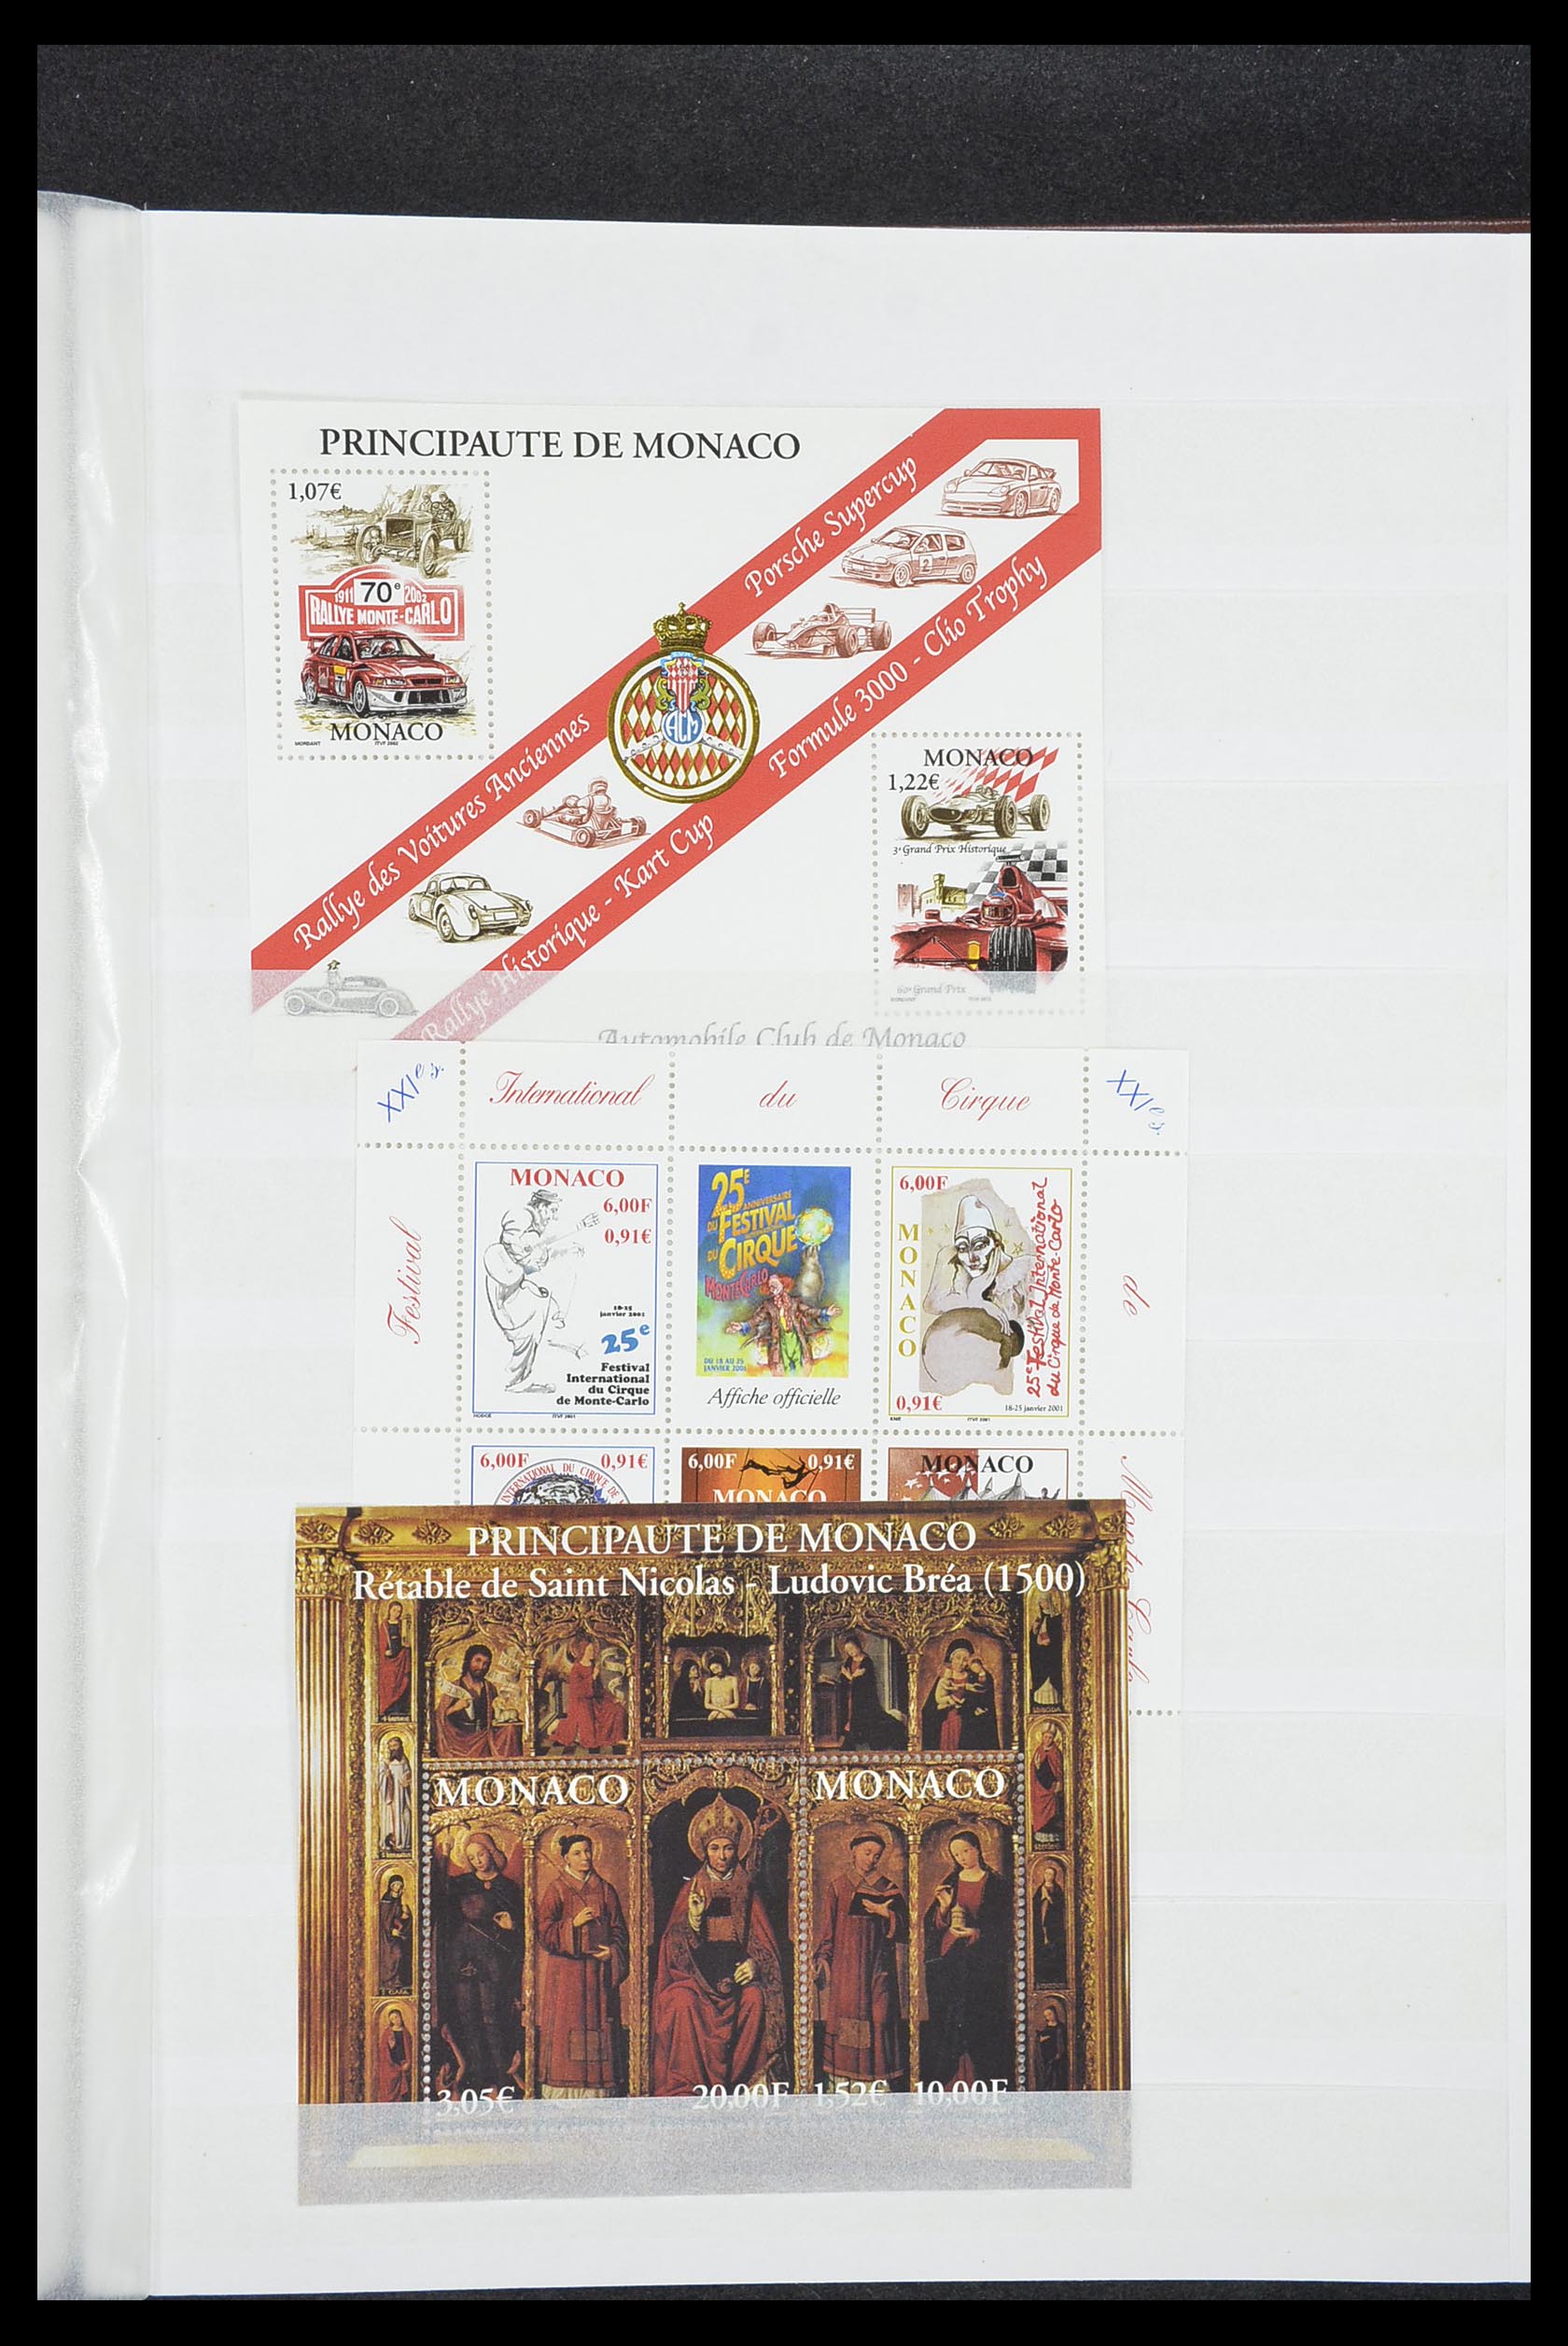 33833 035 - Stamp collection 33833 Monaco souvenir sheets 1979-2015.